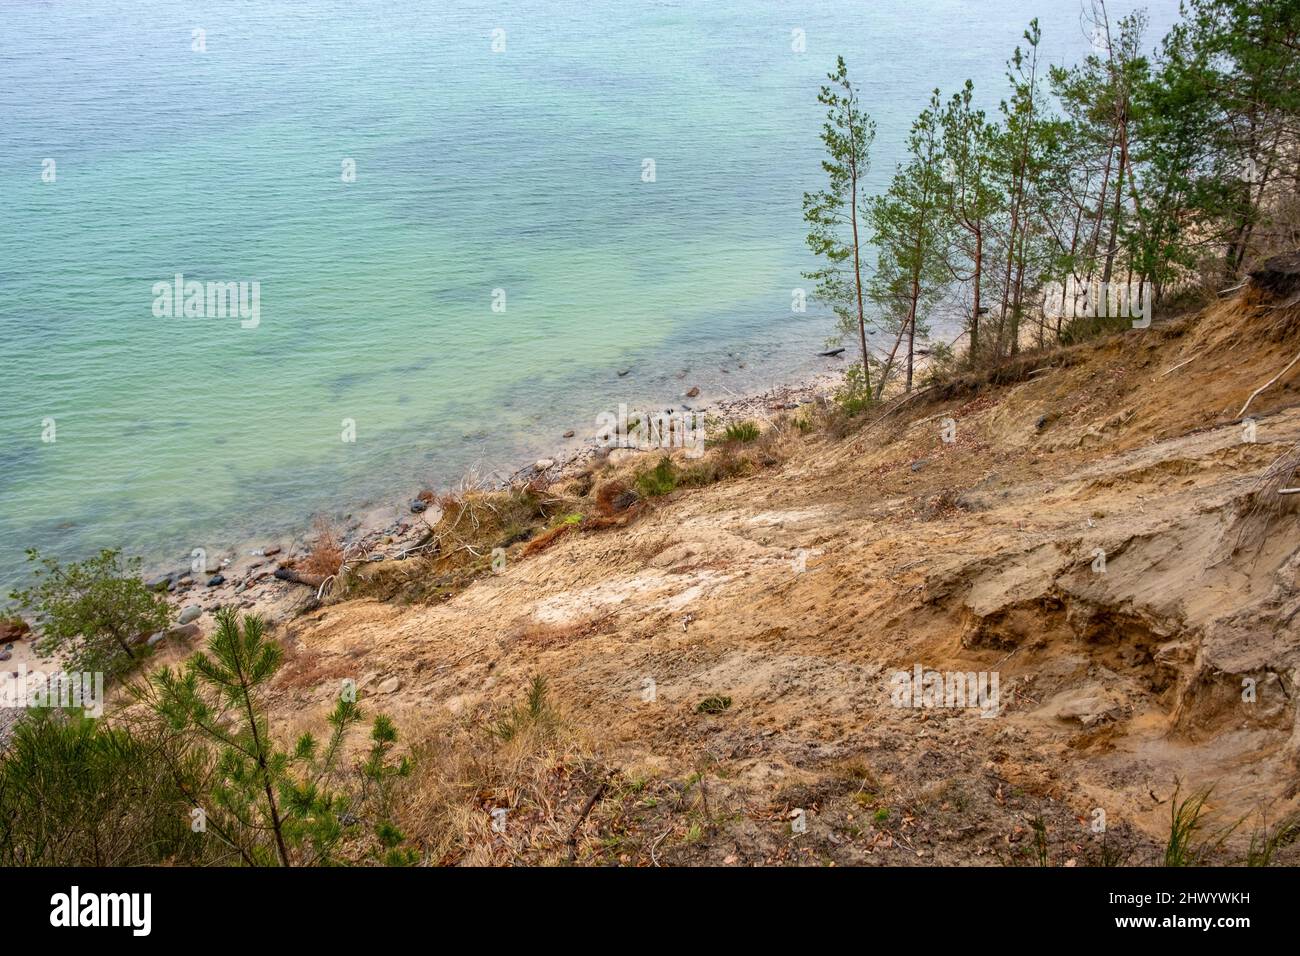 Abfallender Hang des Kliffs von Klif Orlowski - Löss steiles Ufer, das von Ostseewellen in Gdynia Orlowo in Pommern in Polen untergraben wurde Stockfoto